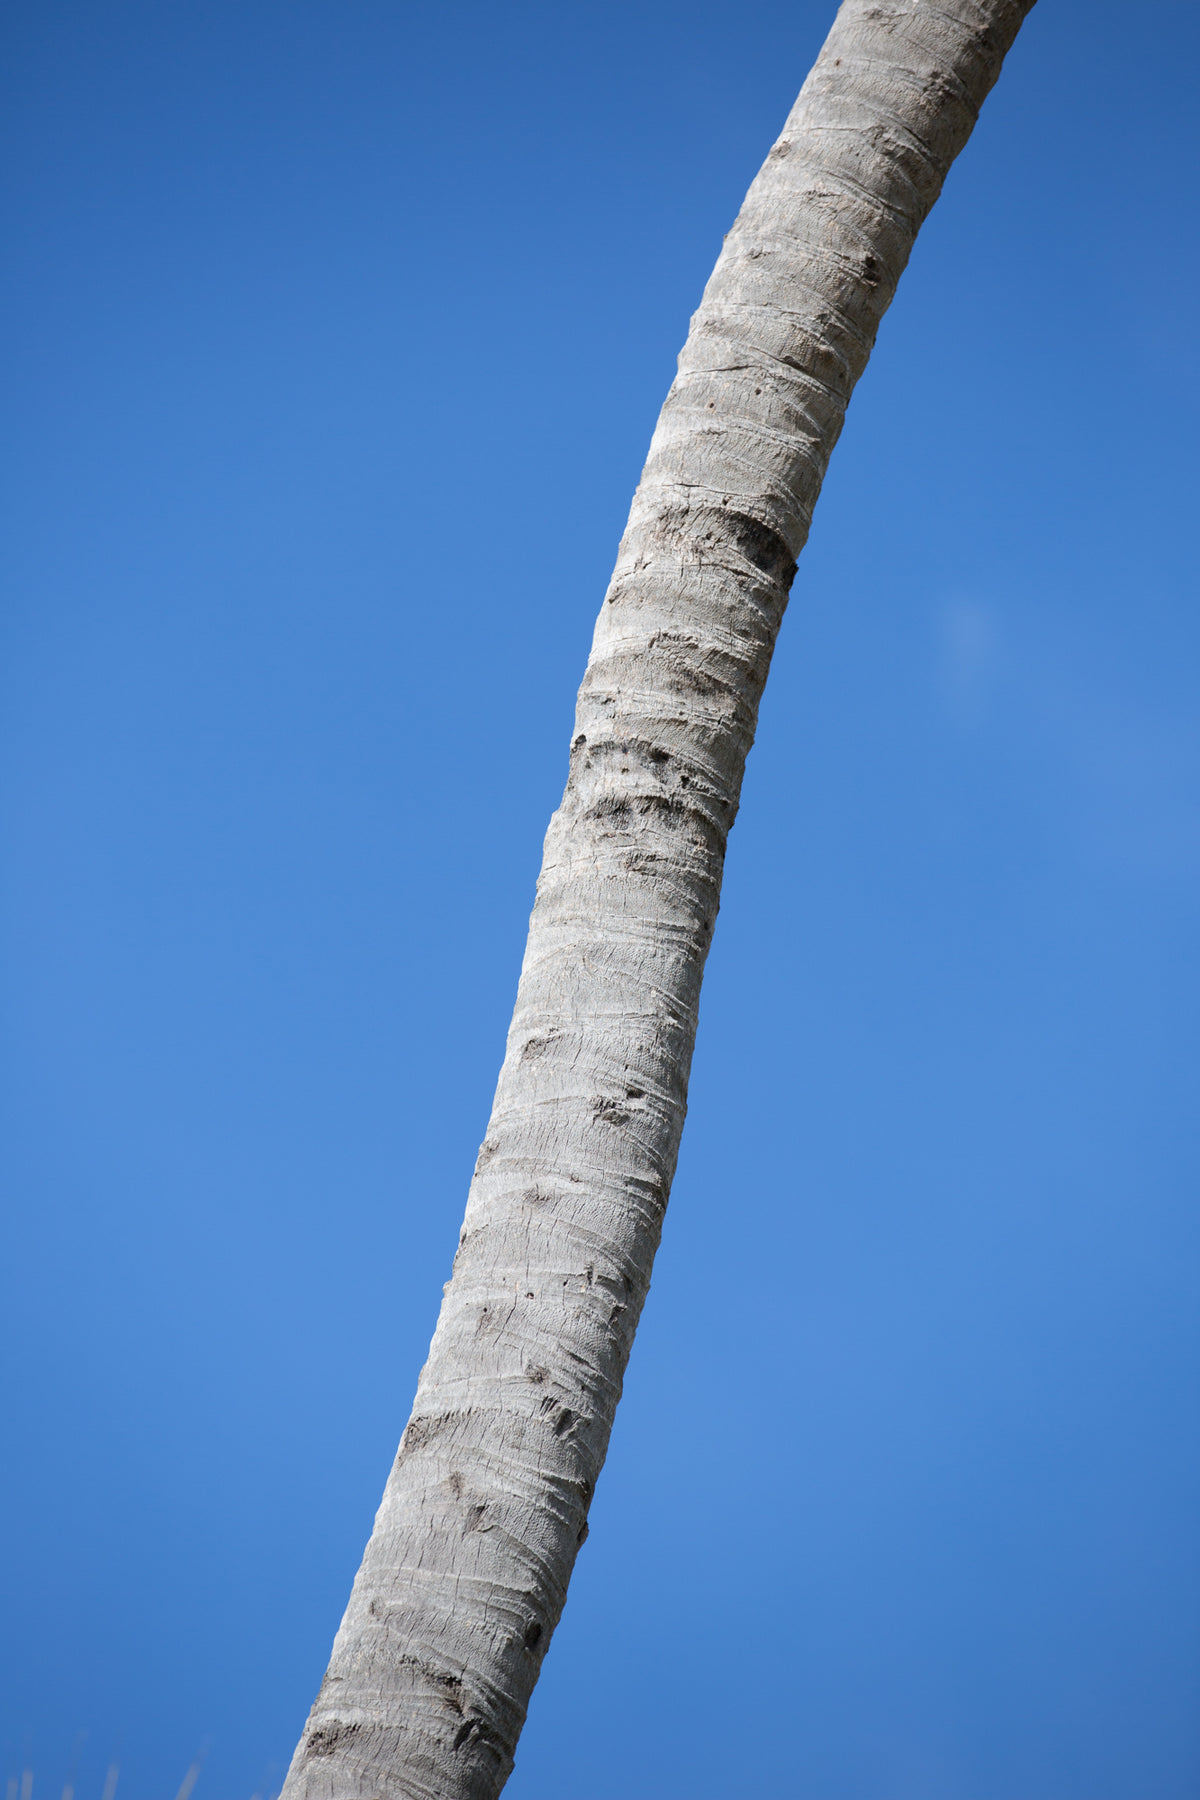 palmtree and blue sky